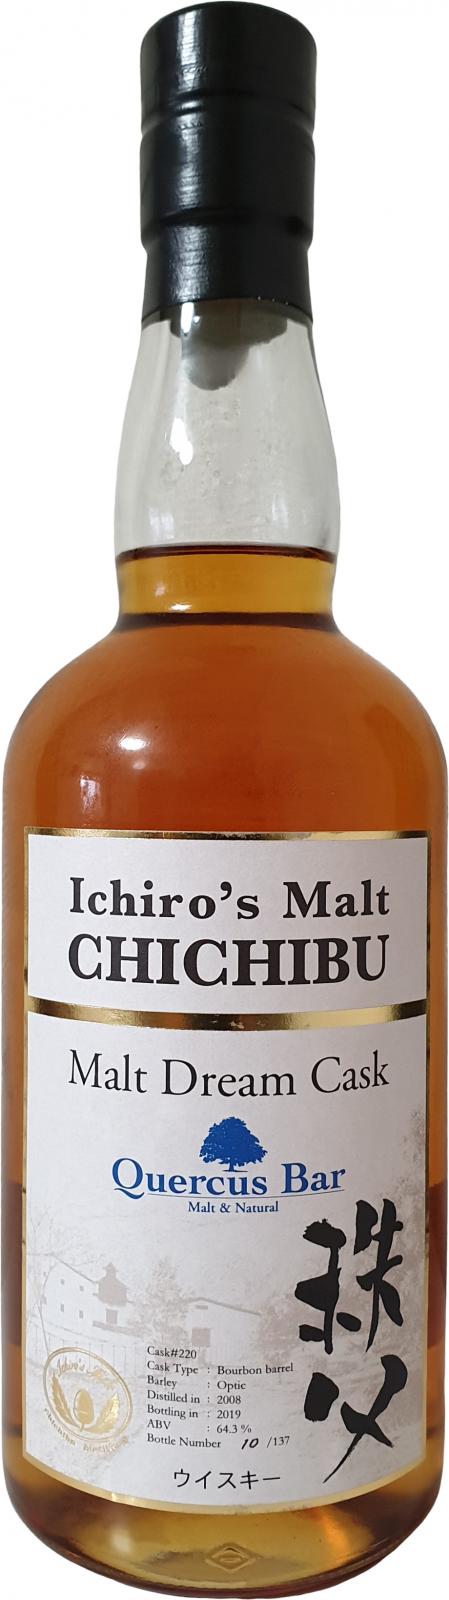 Chichibu 2008 Malt Dream Cask Bourbon #220 Quercus Bar 64.3% 700ml